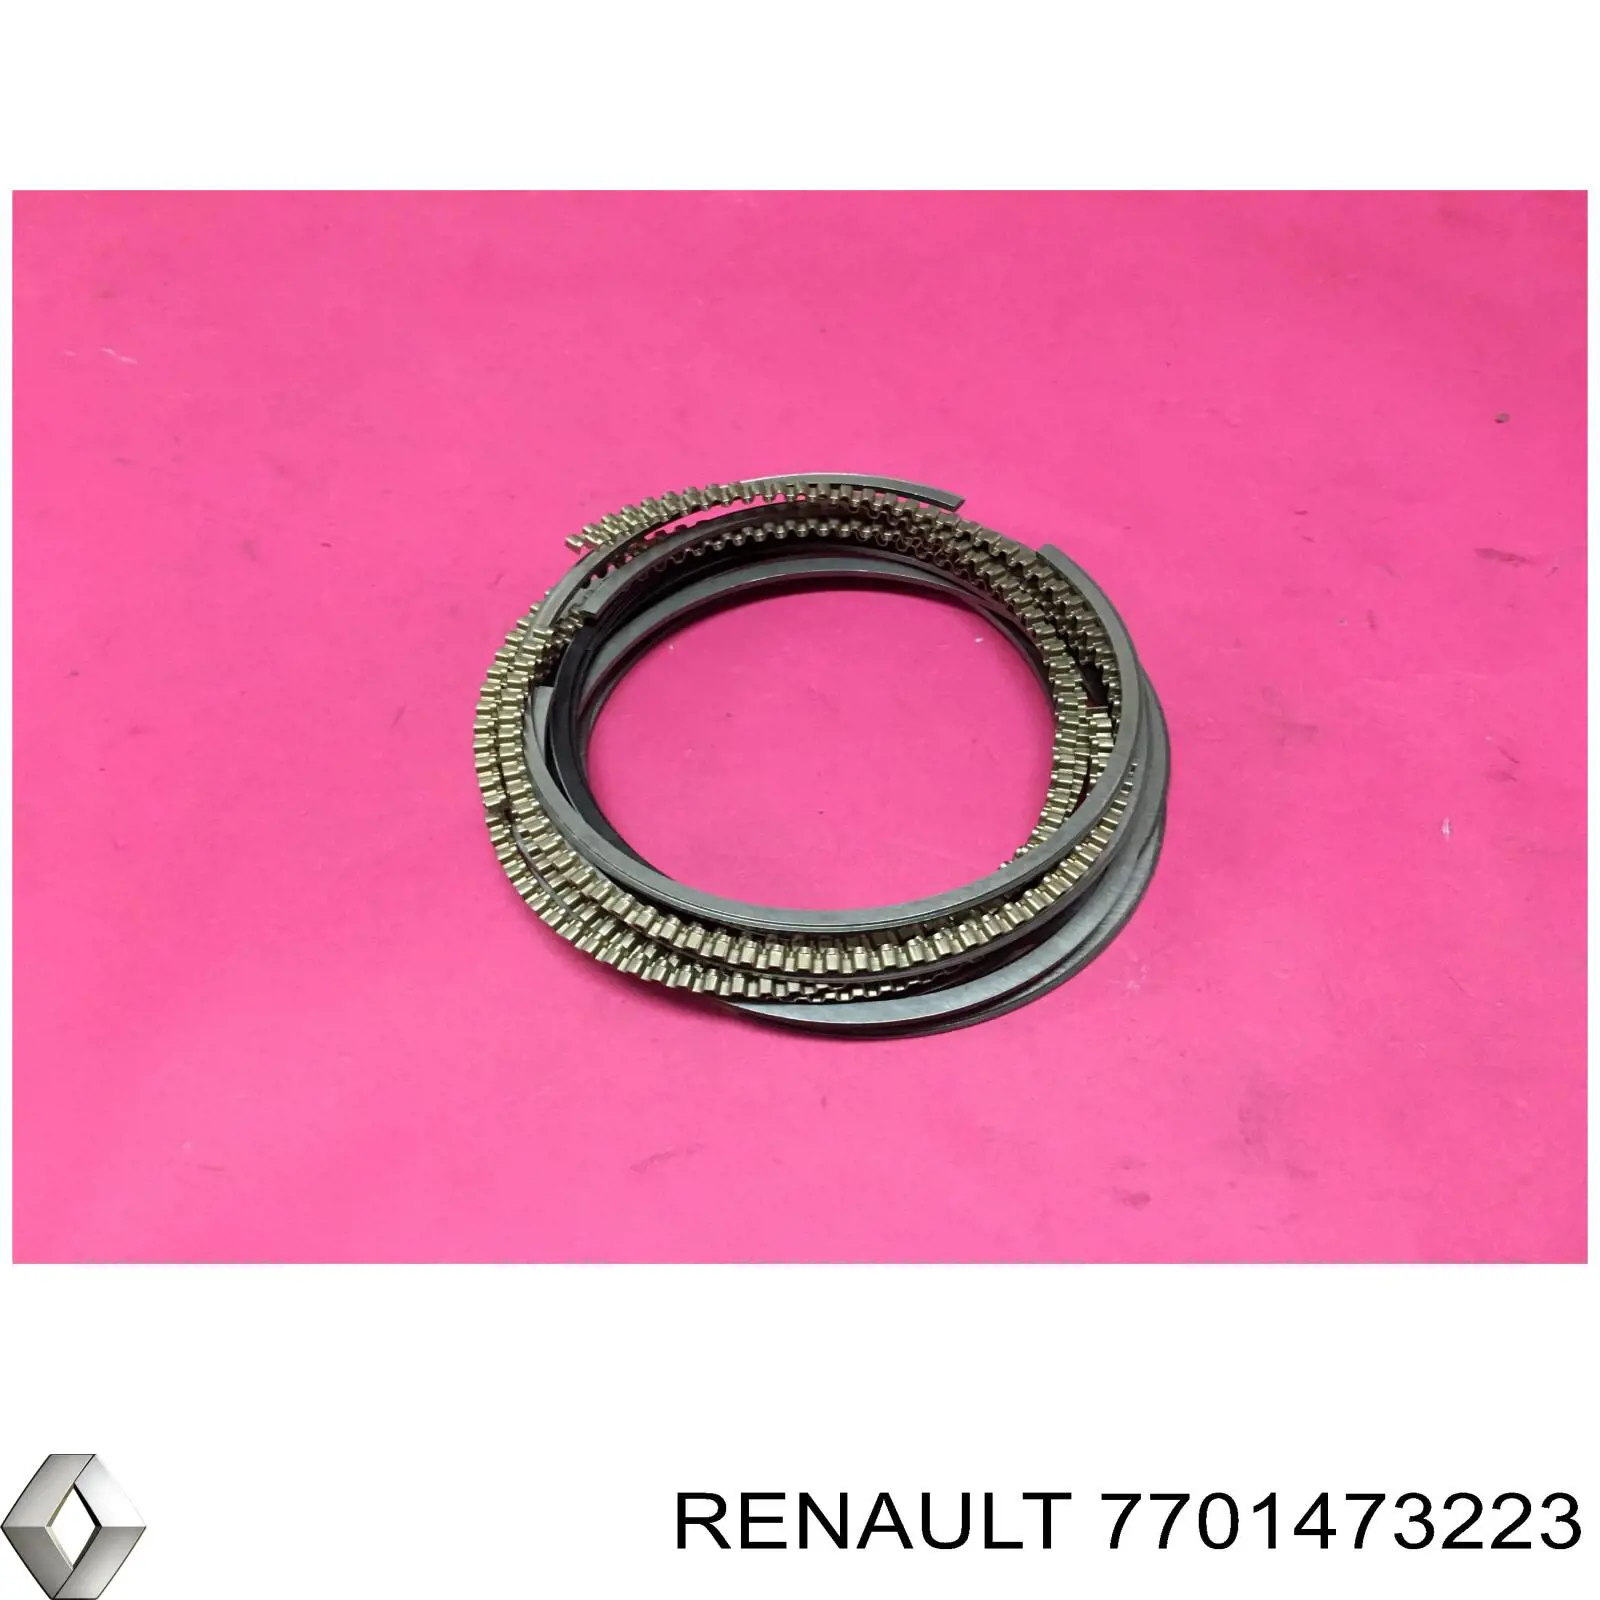 Кольца поршневые на 1 цилиндр, STD. Renault (RVI) 7701473223